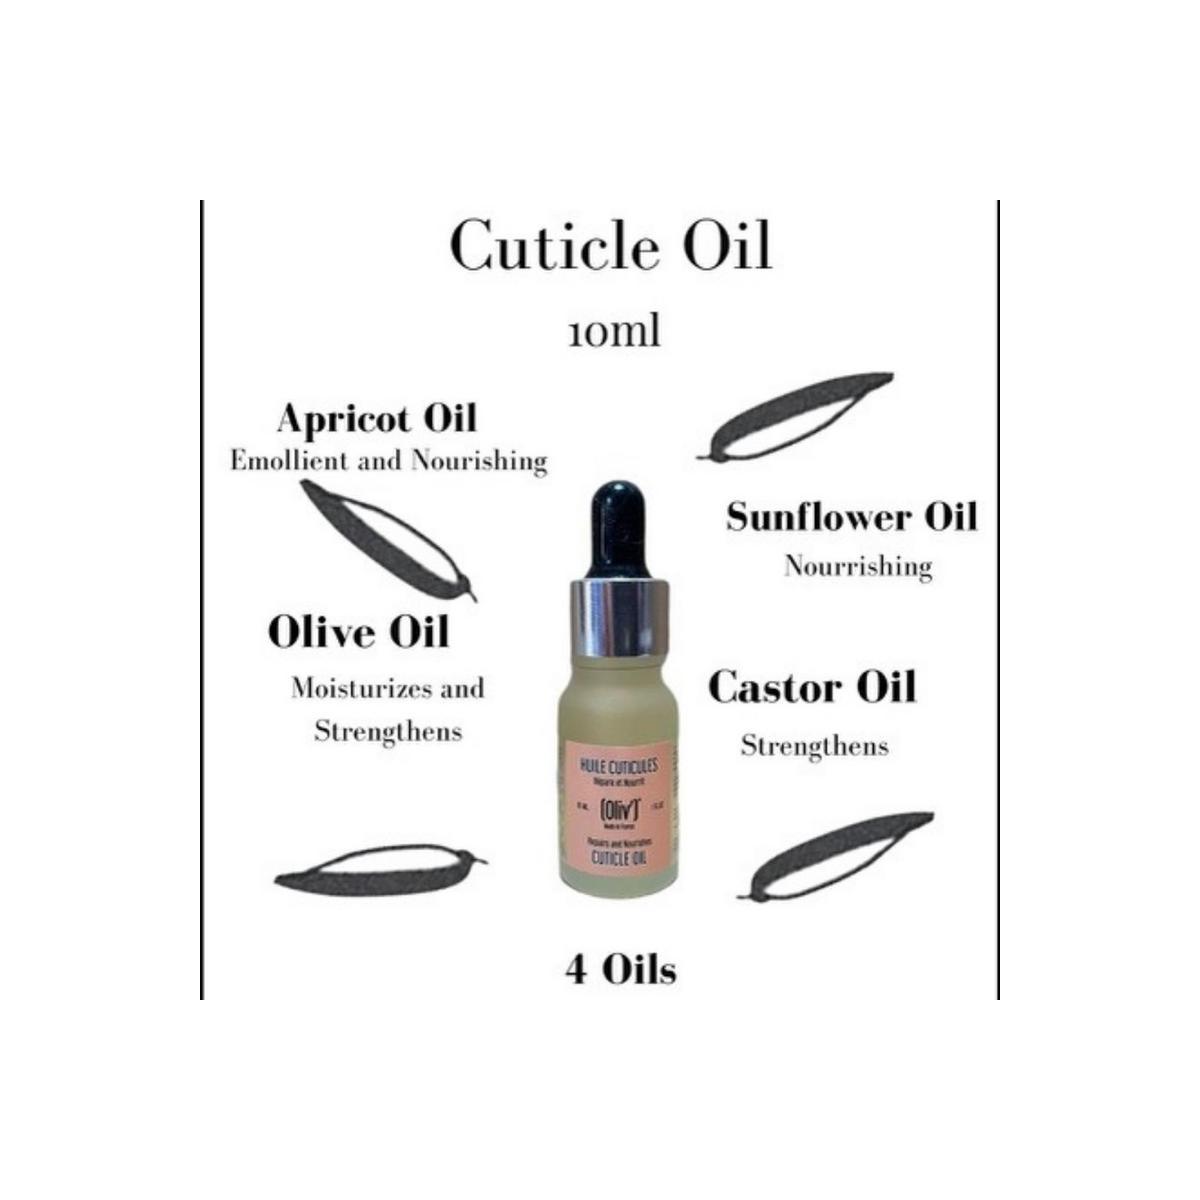 Cuticle oil